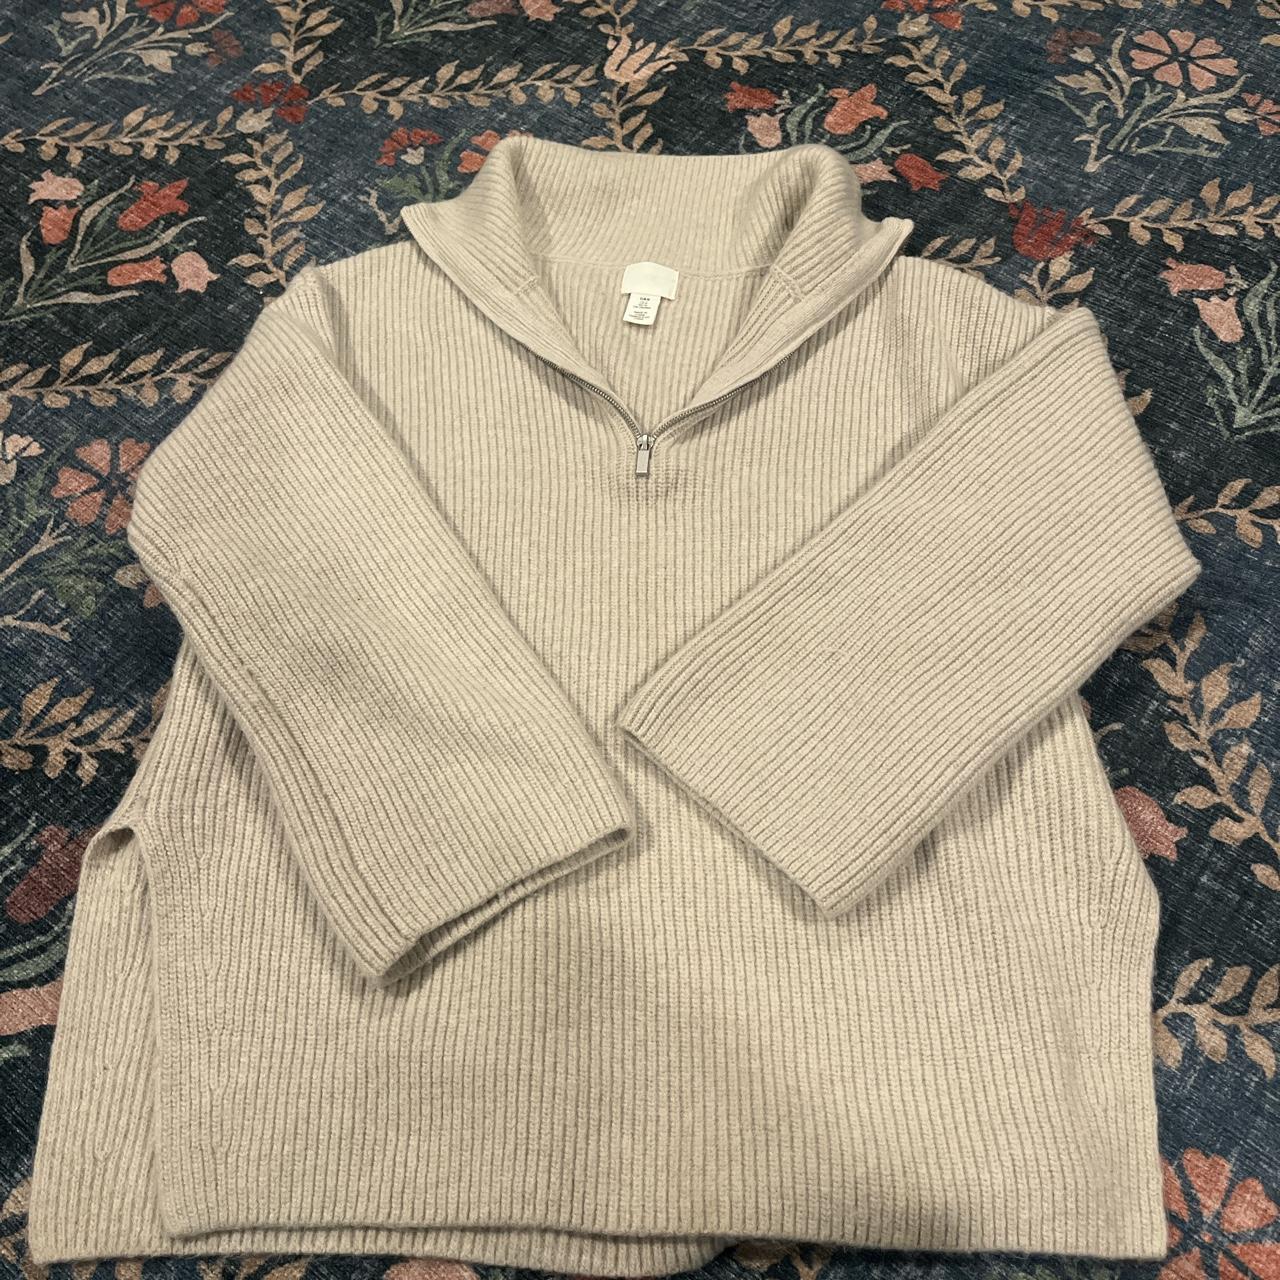 Cute and Cozy H&M quarter zip sweater in a... - Depop